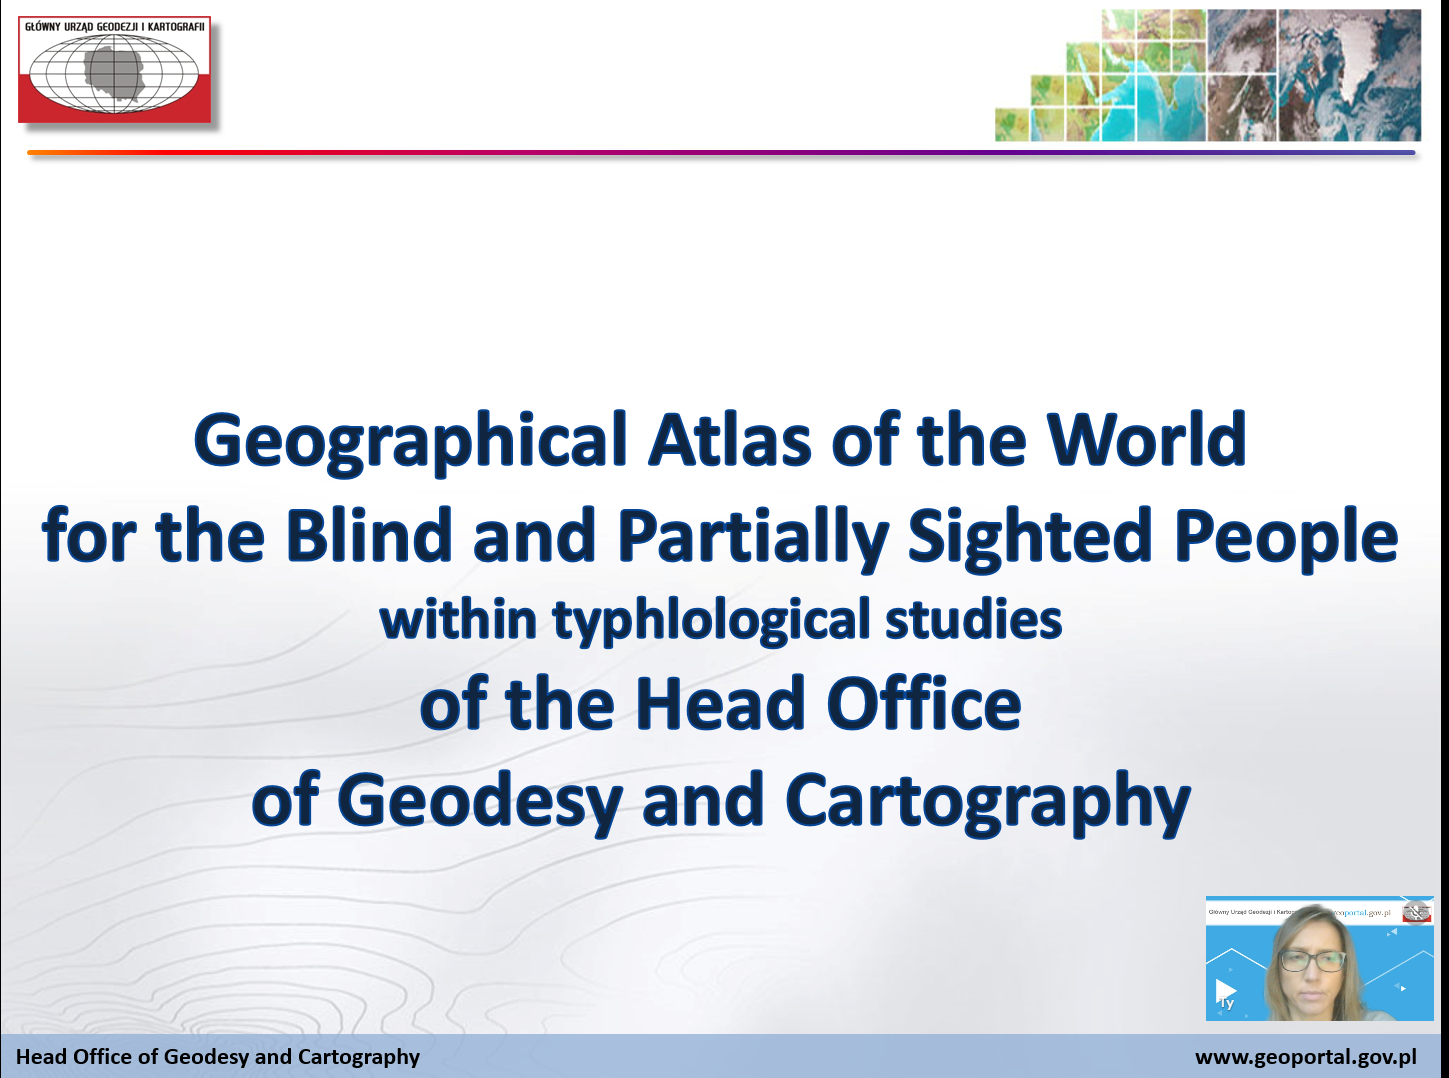 Ilustracja przedstawia zrzut ekranu prezentujący pierwszy slajd prezentacji GUGIK podczas warsztatów ICA